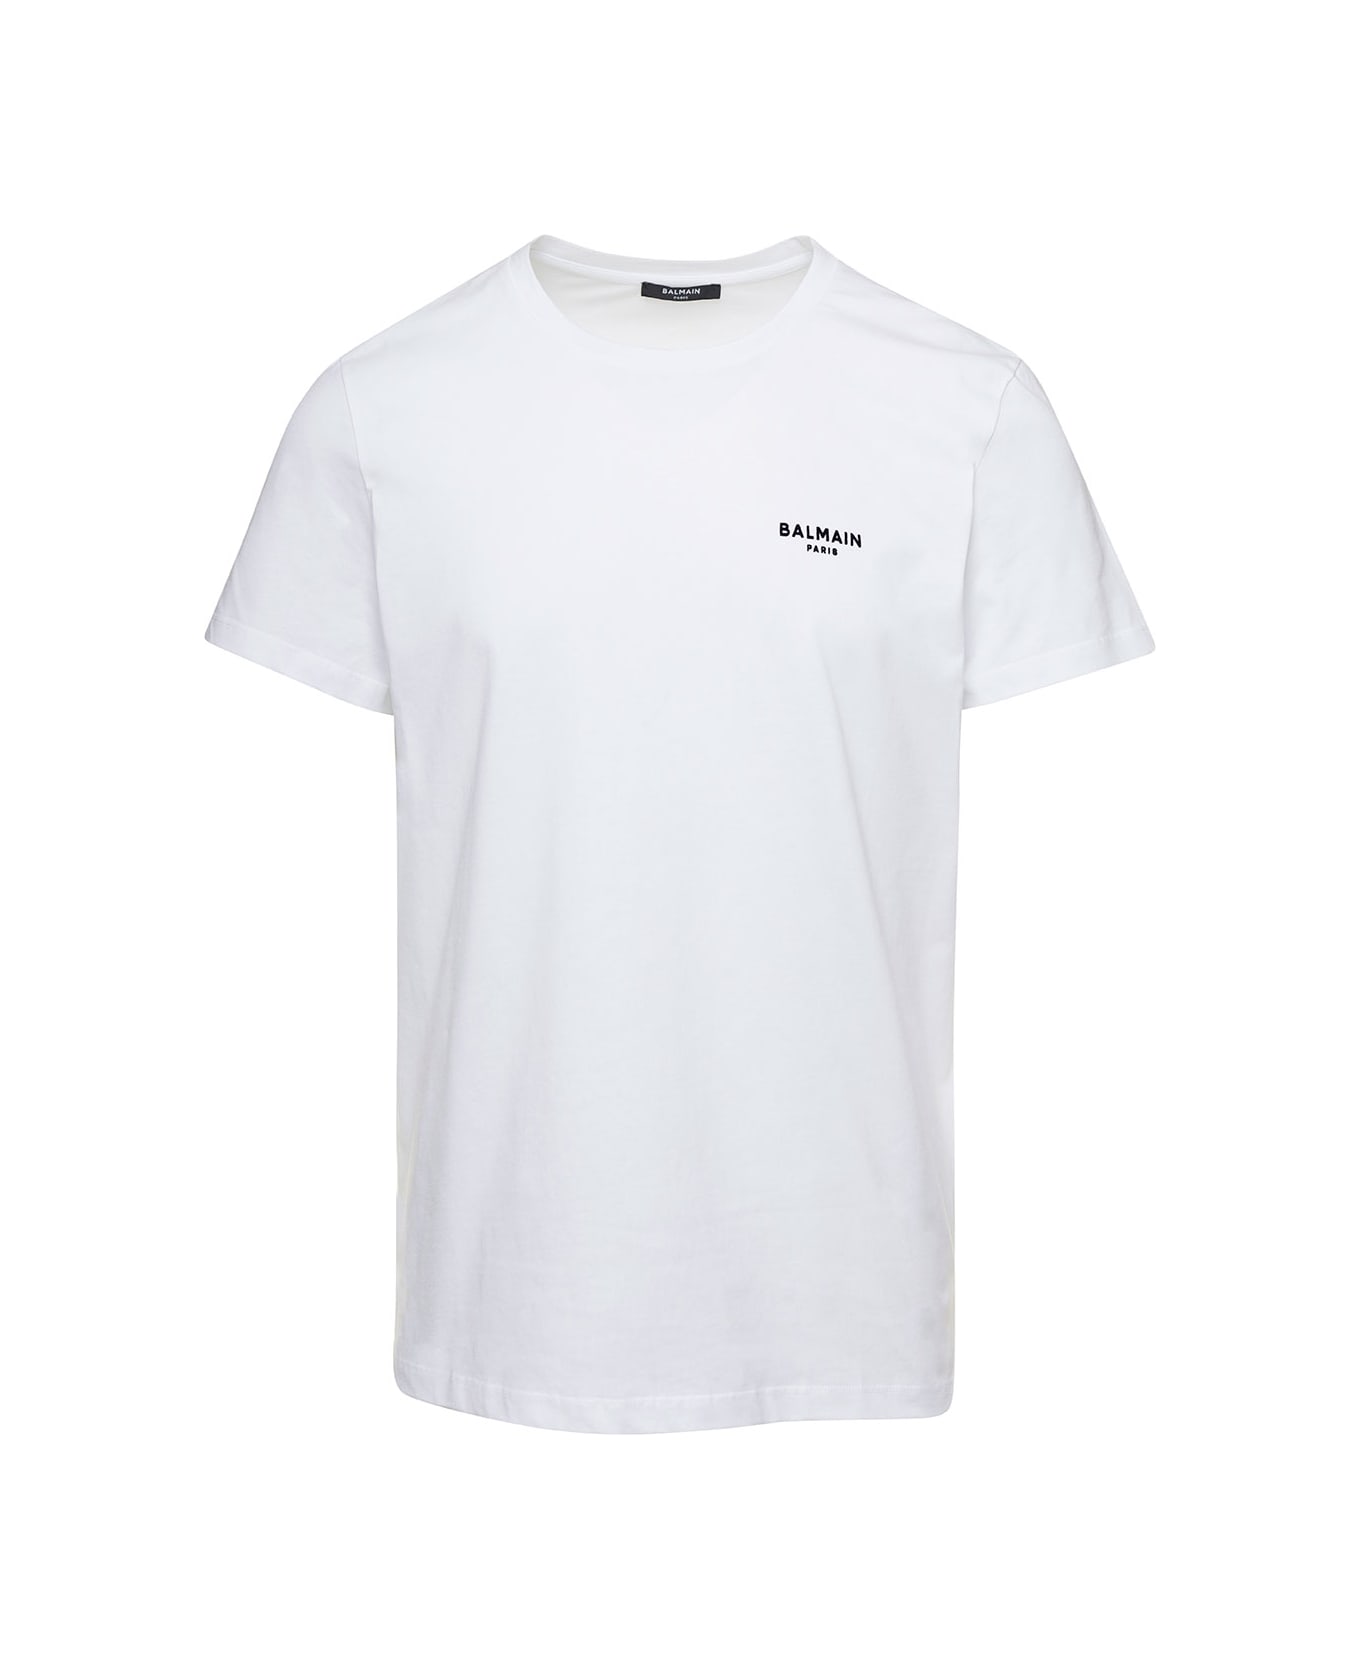 Balmain White T-shirt With Flock Logo In Cotton Man - White